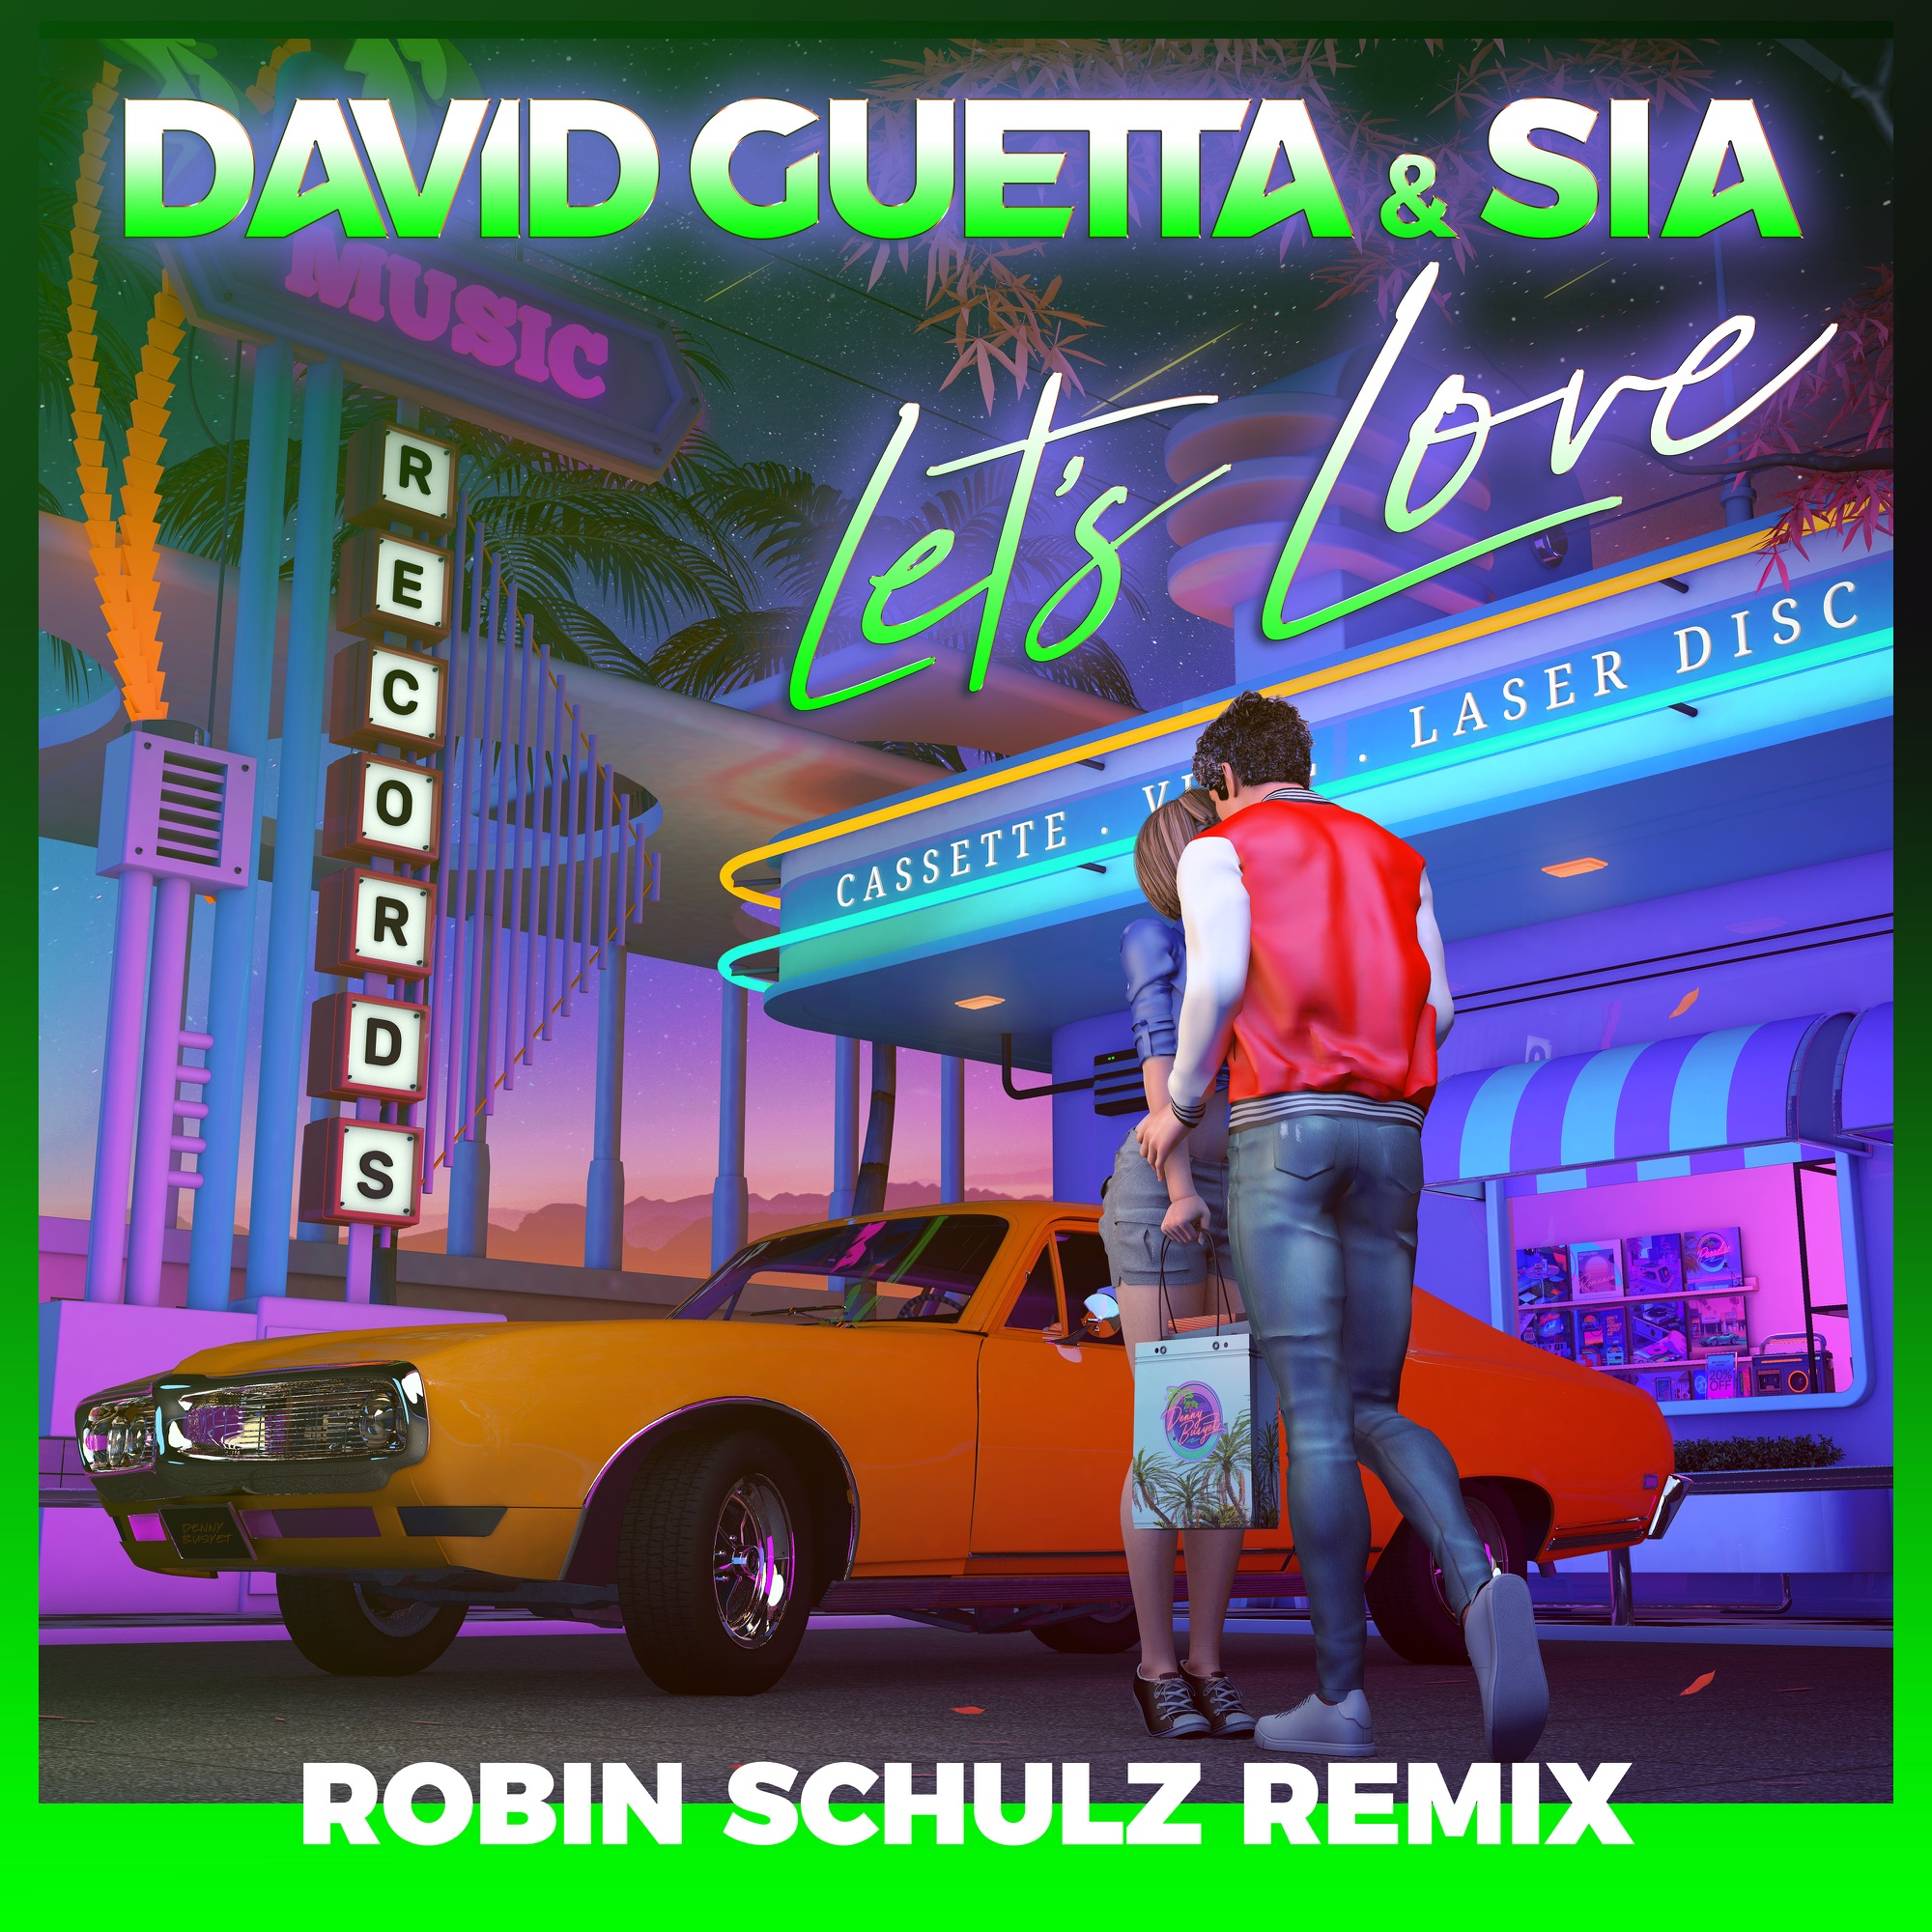 David Guetta & Sia - Let's Love (Robin Schulz Remix) - Single